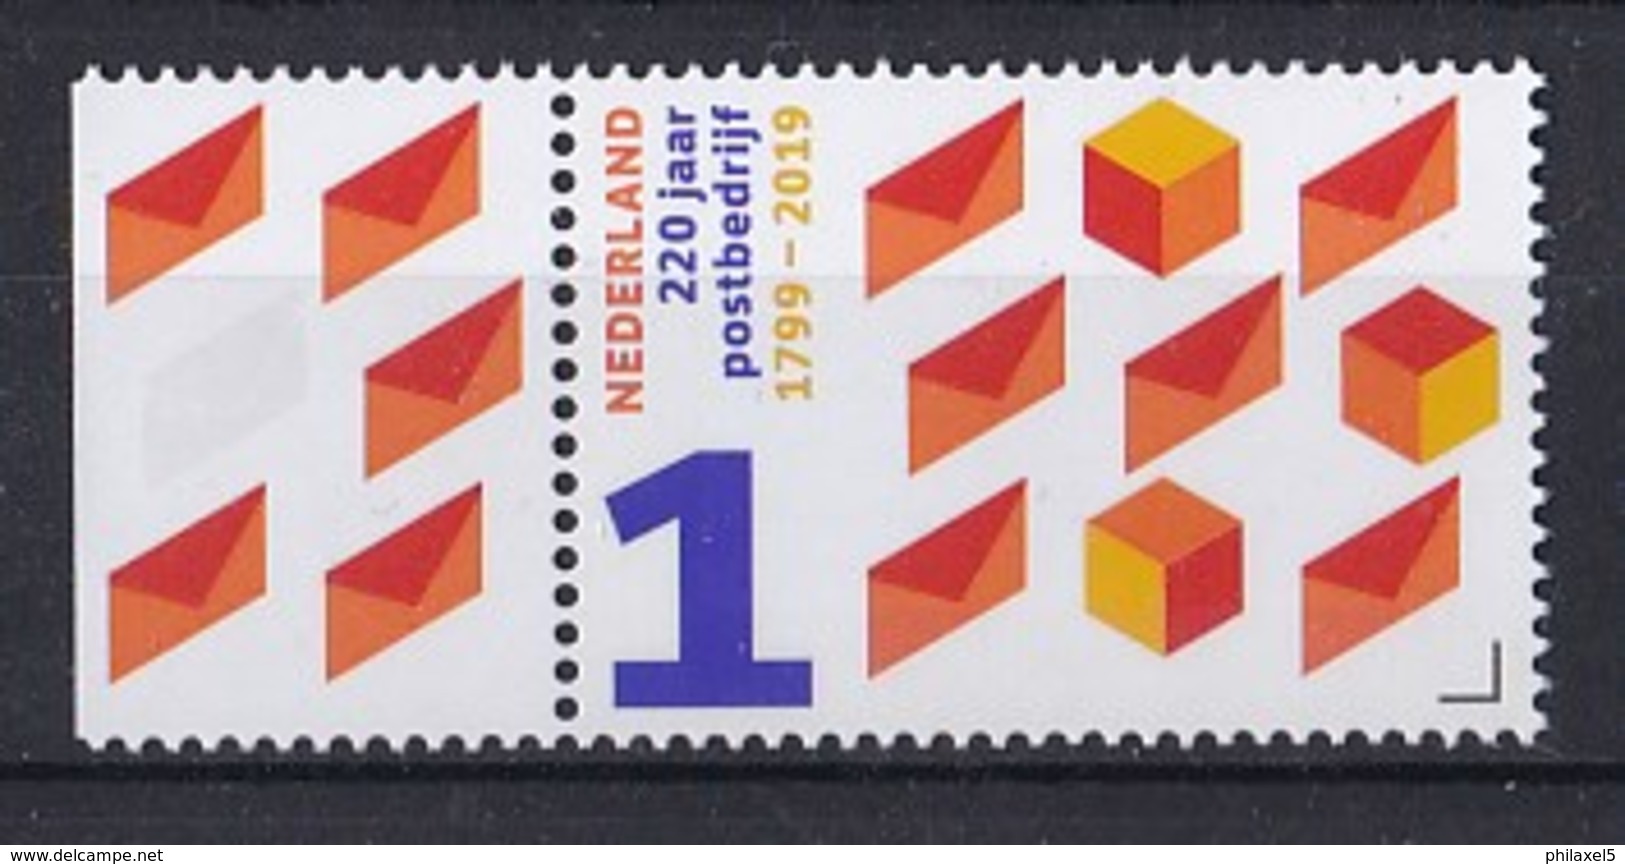 Nederland - 220 Jaar Postbedrijf - 1799-2019 - PTT/KPN/TPG Post/TNT Post/PostNL - MNH - Tab Links - NVPH 3722a - Neufs